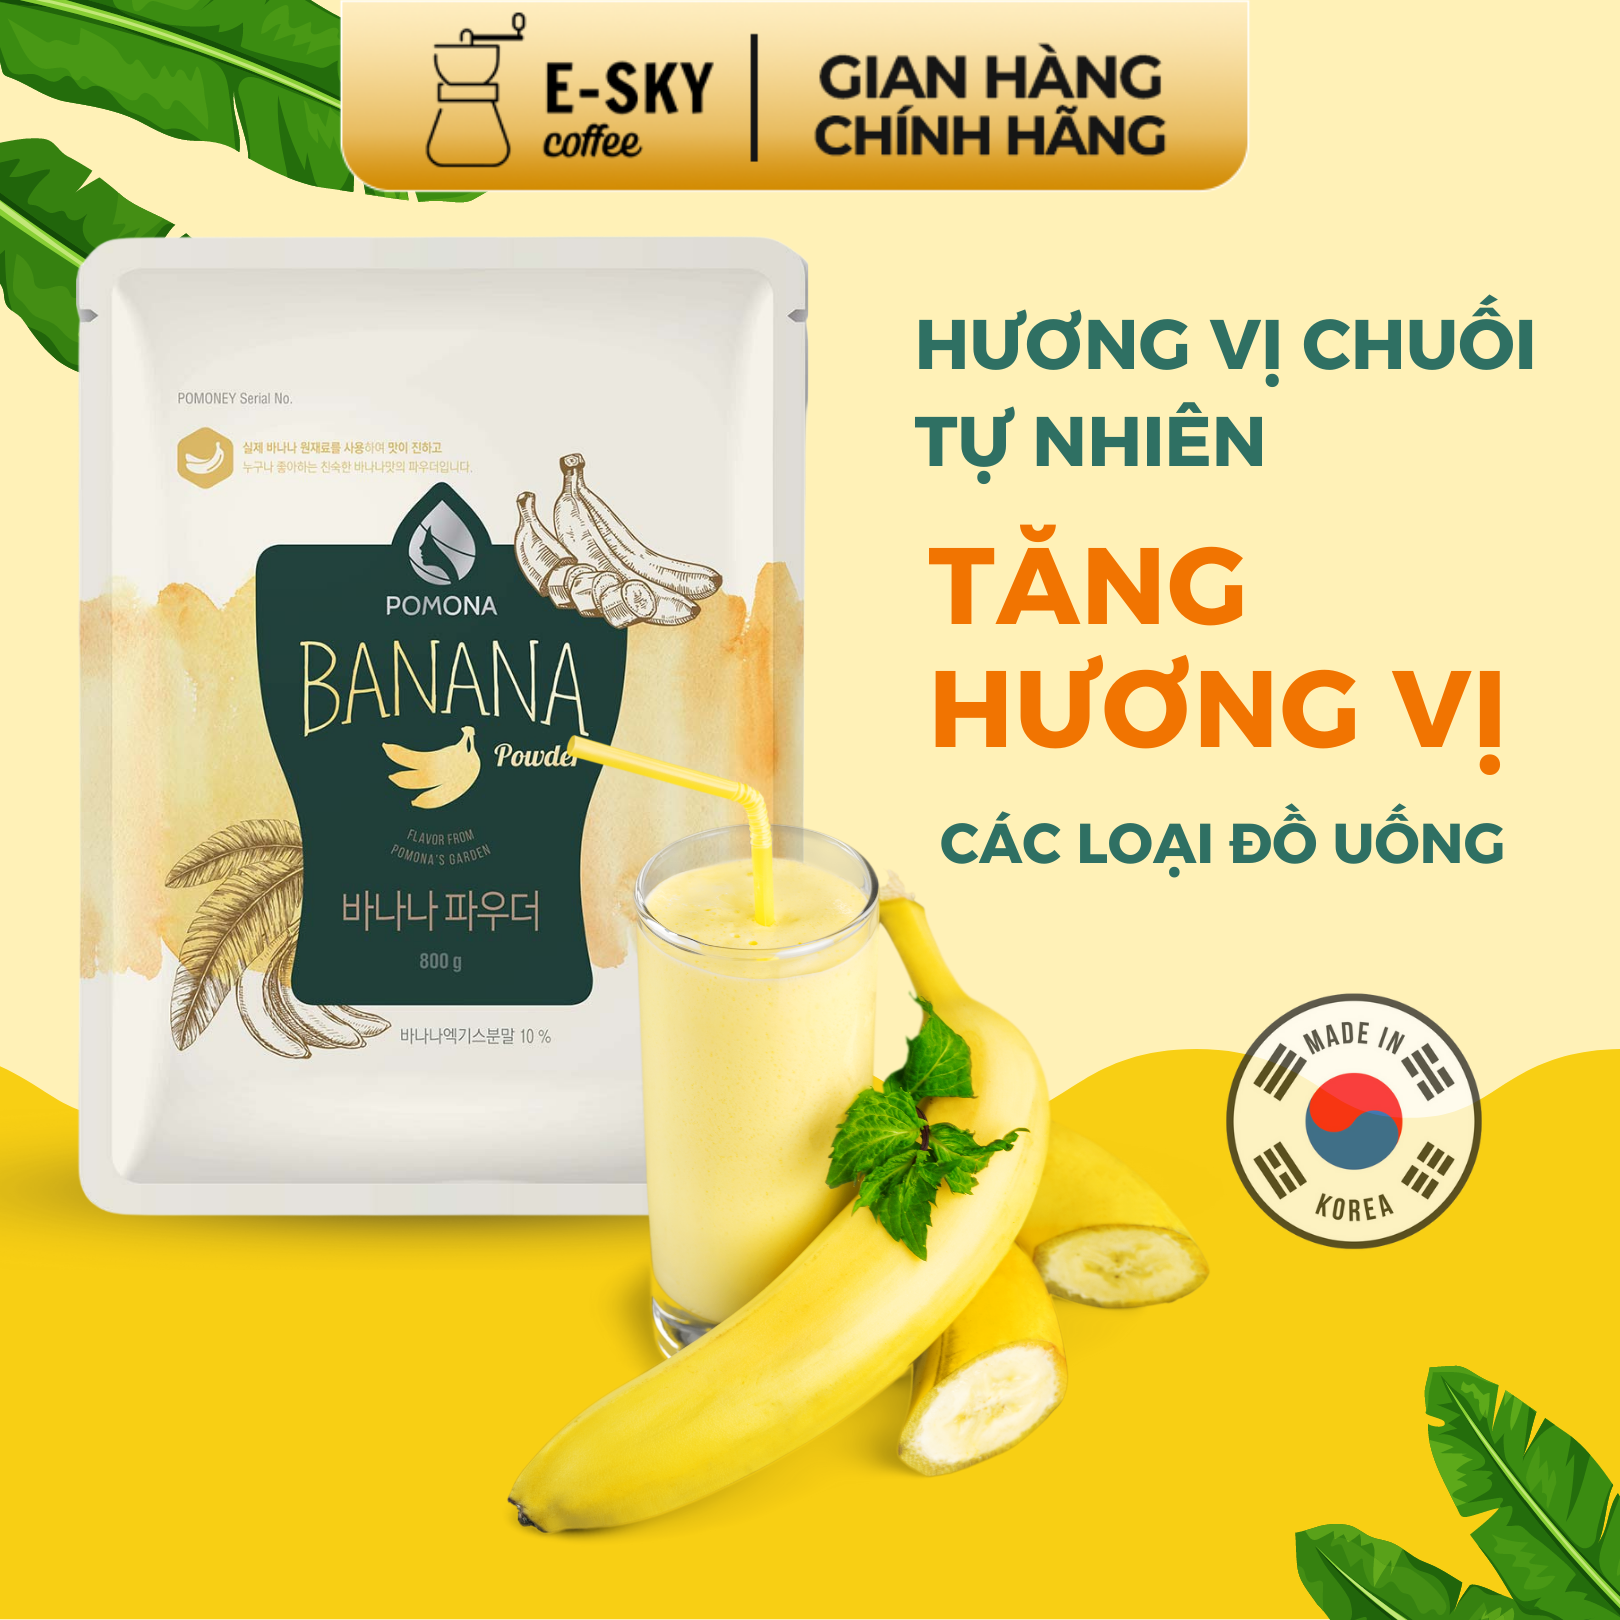 Bột Chuối Pomona Banana Powder Nguyên Liệu Pha Chế Cà Phê Sữa Chuối Đá xay Milk Foam Hàn Quốc 800g